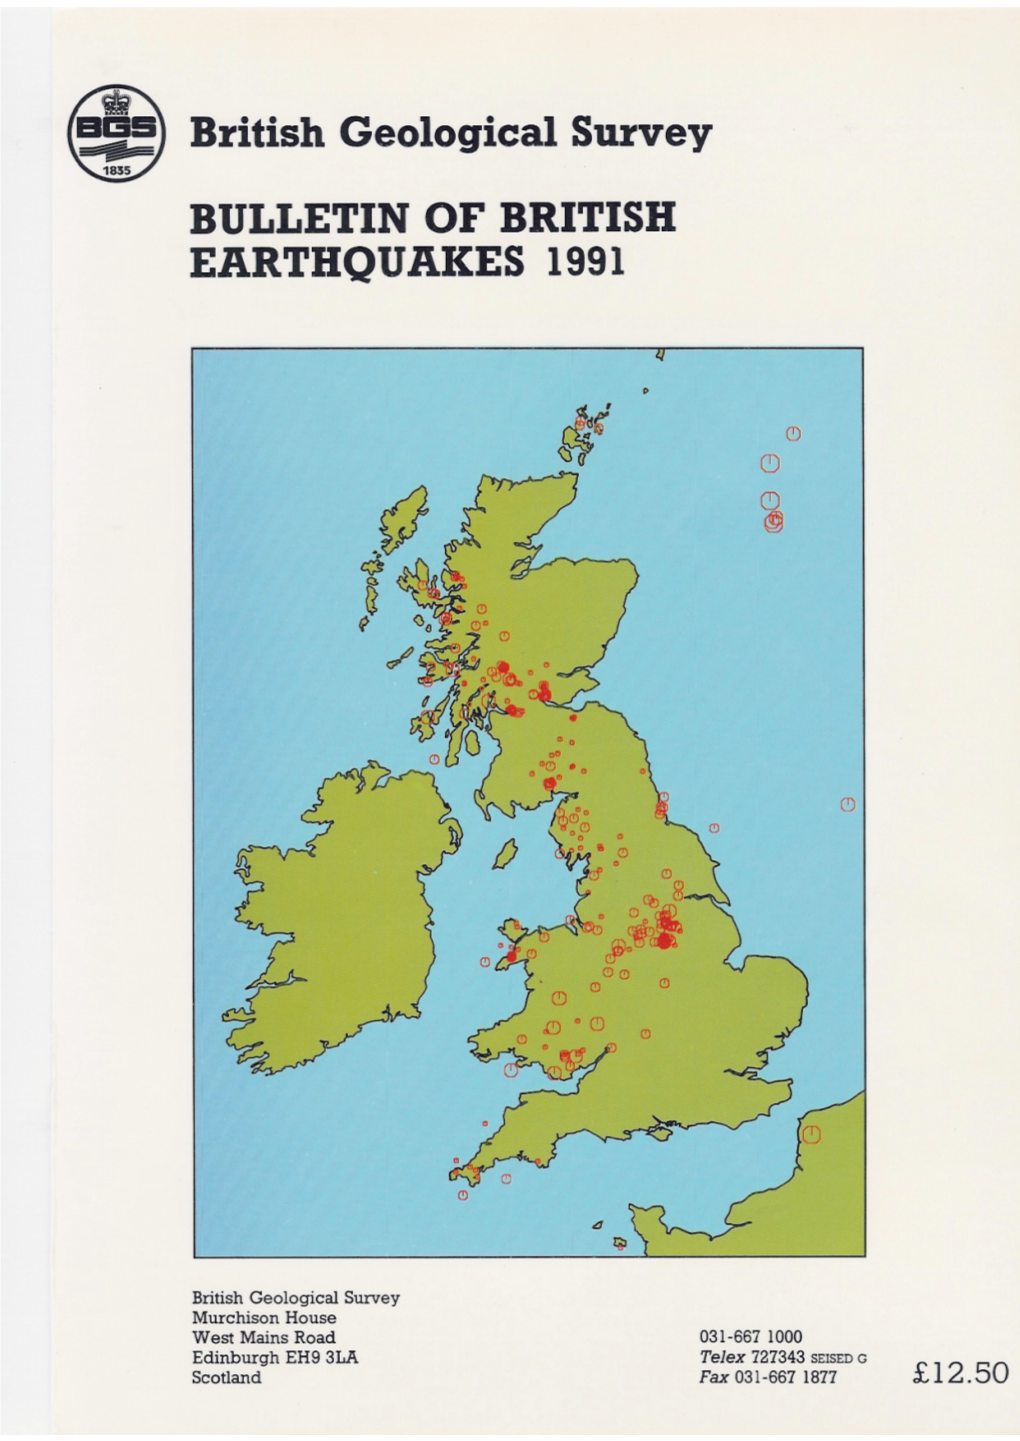 1991 Earthquake Bulletin